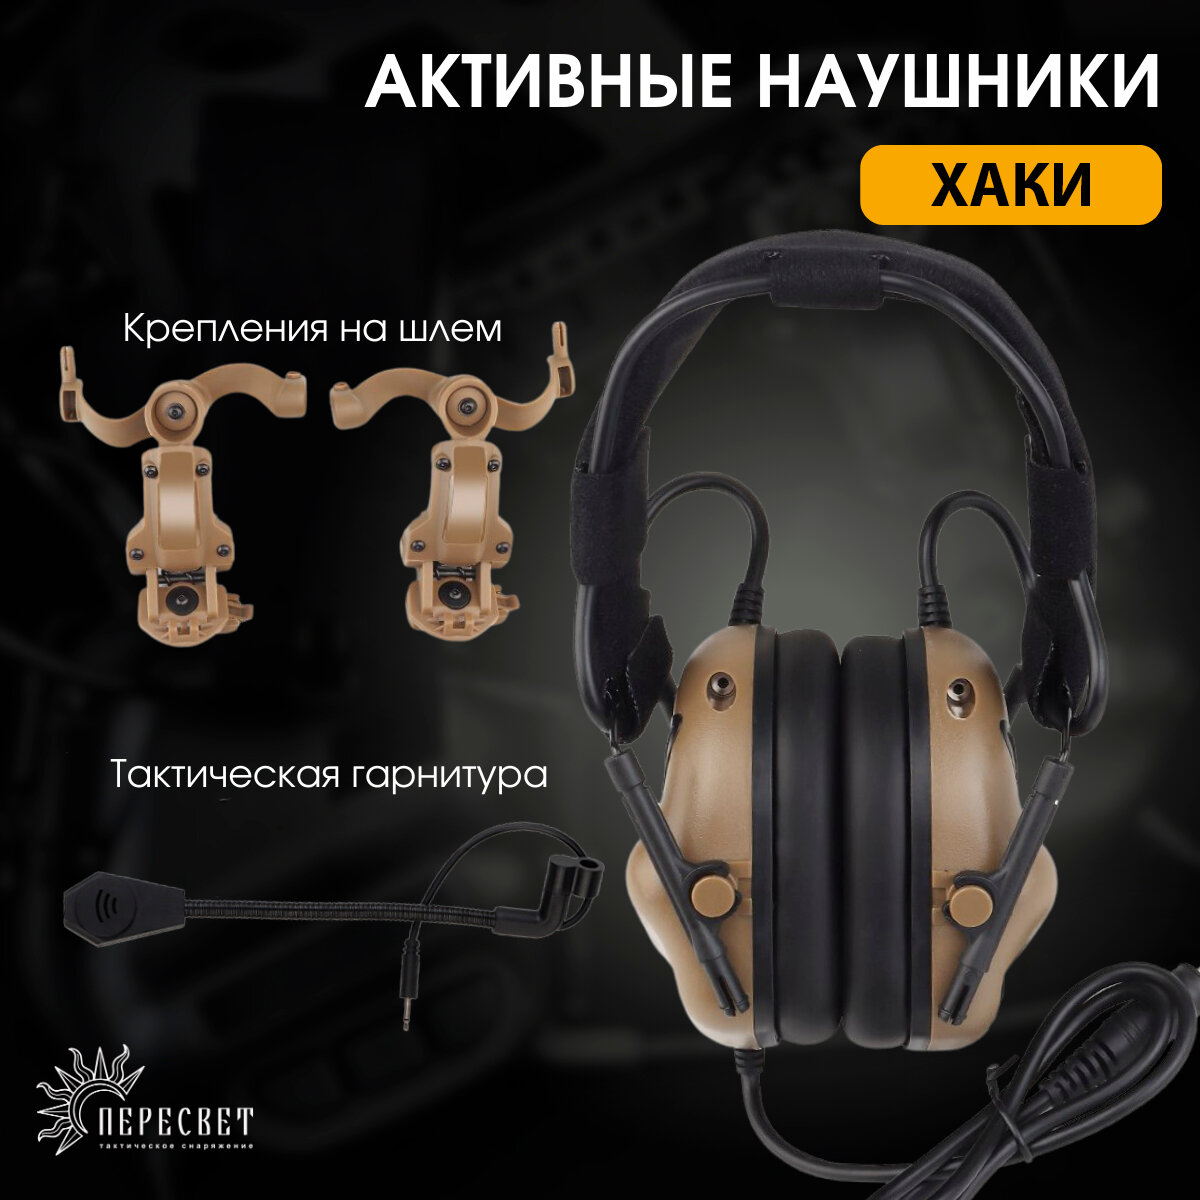 Активные наушники тактические для стрельбы на шлем с микрофоном / Тактическая гарнитура с шумоподавлением (Хаки)